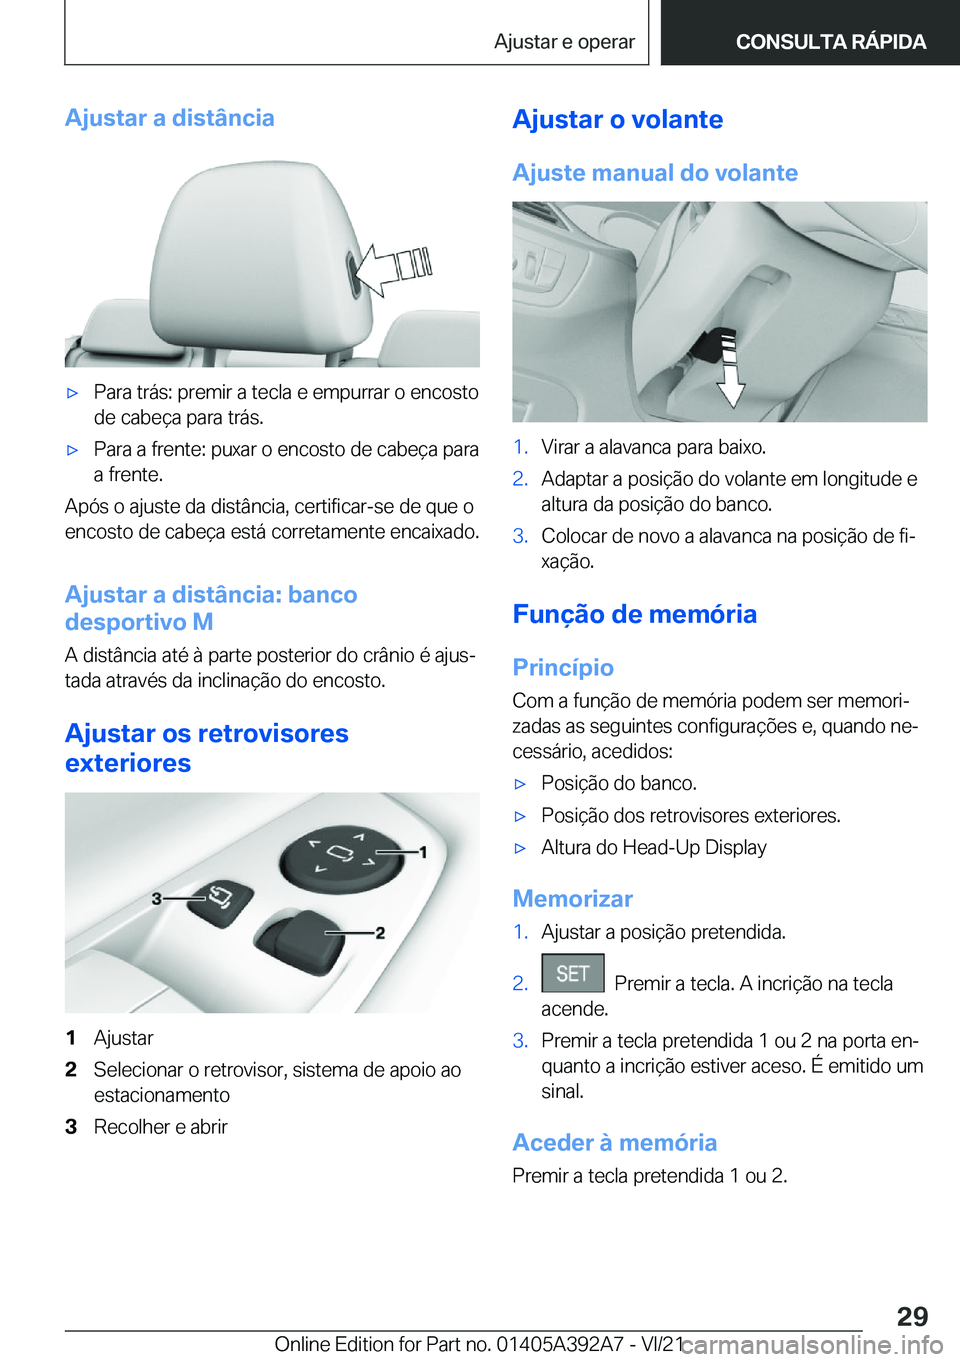 BMW 4 SERIES 2022  Manual do condutor (in Portuguese) �A�j�u�s�t�a�r��a��d�i�s�t�â�n�c�i�ax�P�a�r�a��t�r�á�s�:��p�r�e�m�i�r��a��t�e�c�l�a��e��e�m�p�u�r�r�a�r��o��e�n�c�o�s�t�o
�d�e��c�a�b�e�